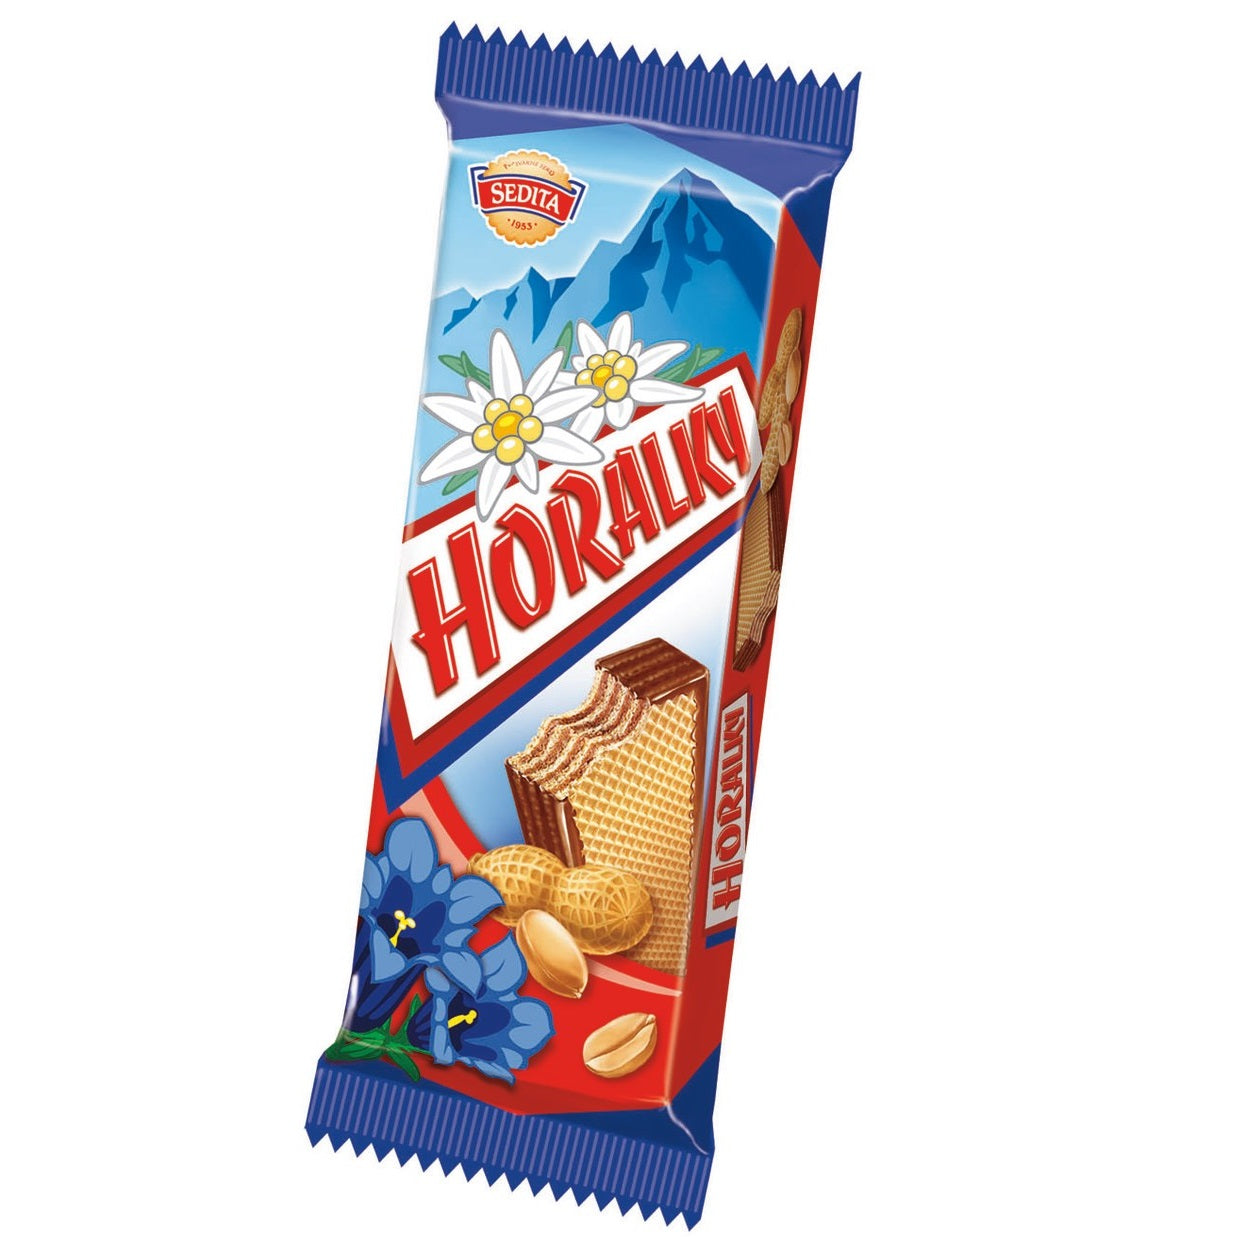 Sedita Horalky Knusprige Waffeln mit Erdnusscremefüllung und Kakaoüberzug